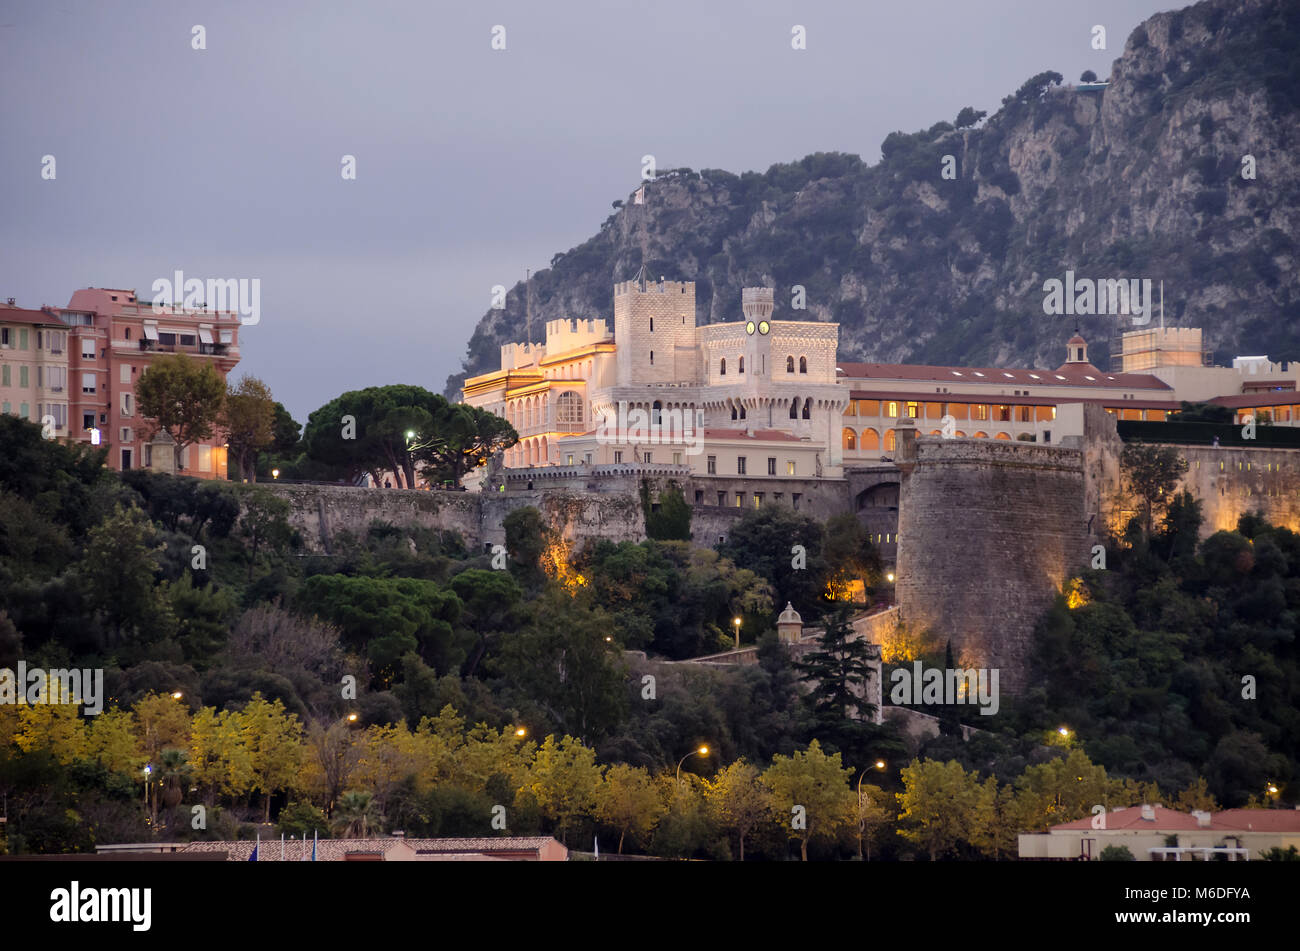 Monaco, Principauté de Monaco - 3 novembre, 2015 : Le point de vue du Palais princier, résidence de l'actuel roi Albert II de la Mer Méditerranée Banque D'Images